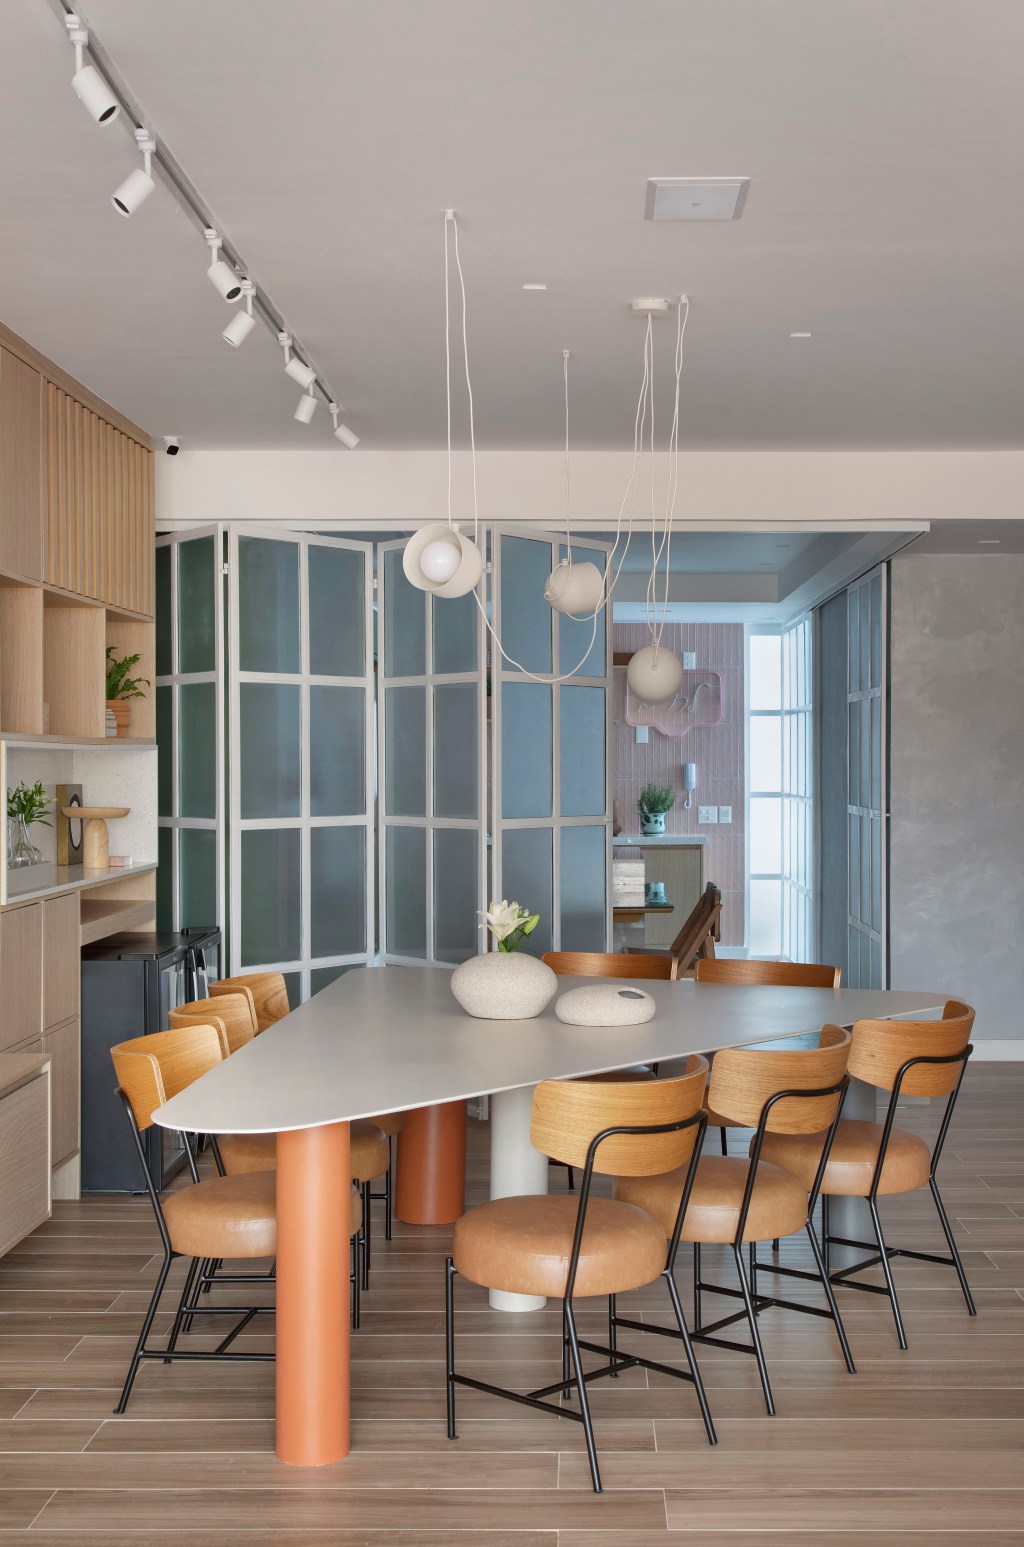 Apê 160 m2 cara de casa paleta verde rosa néons up3 arquitetura decoração cozinha verde e rosa armario serralheria madeira mesa cadeira sala jantar